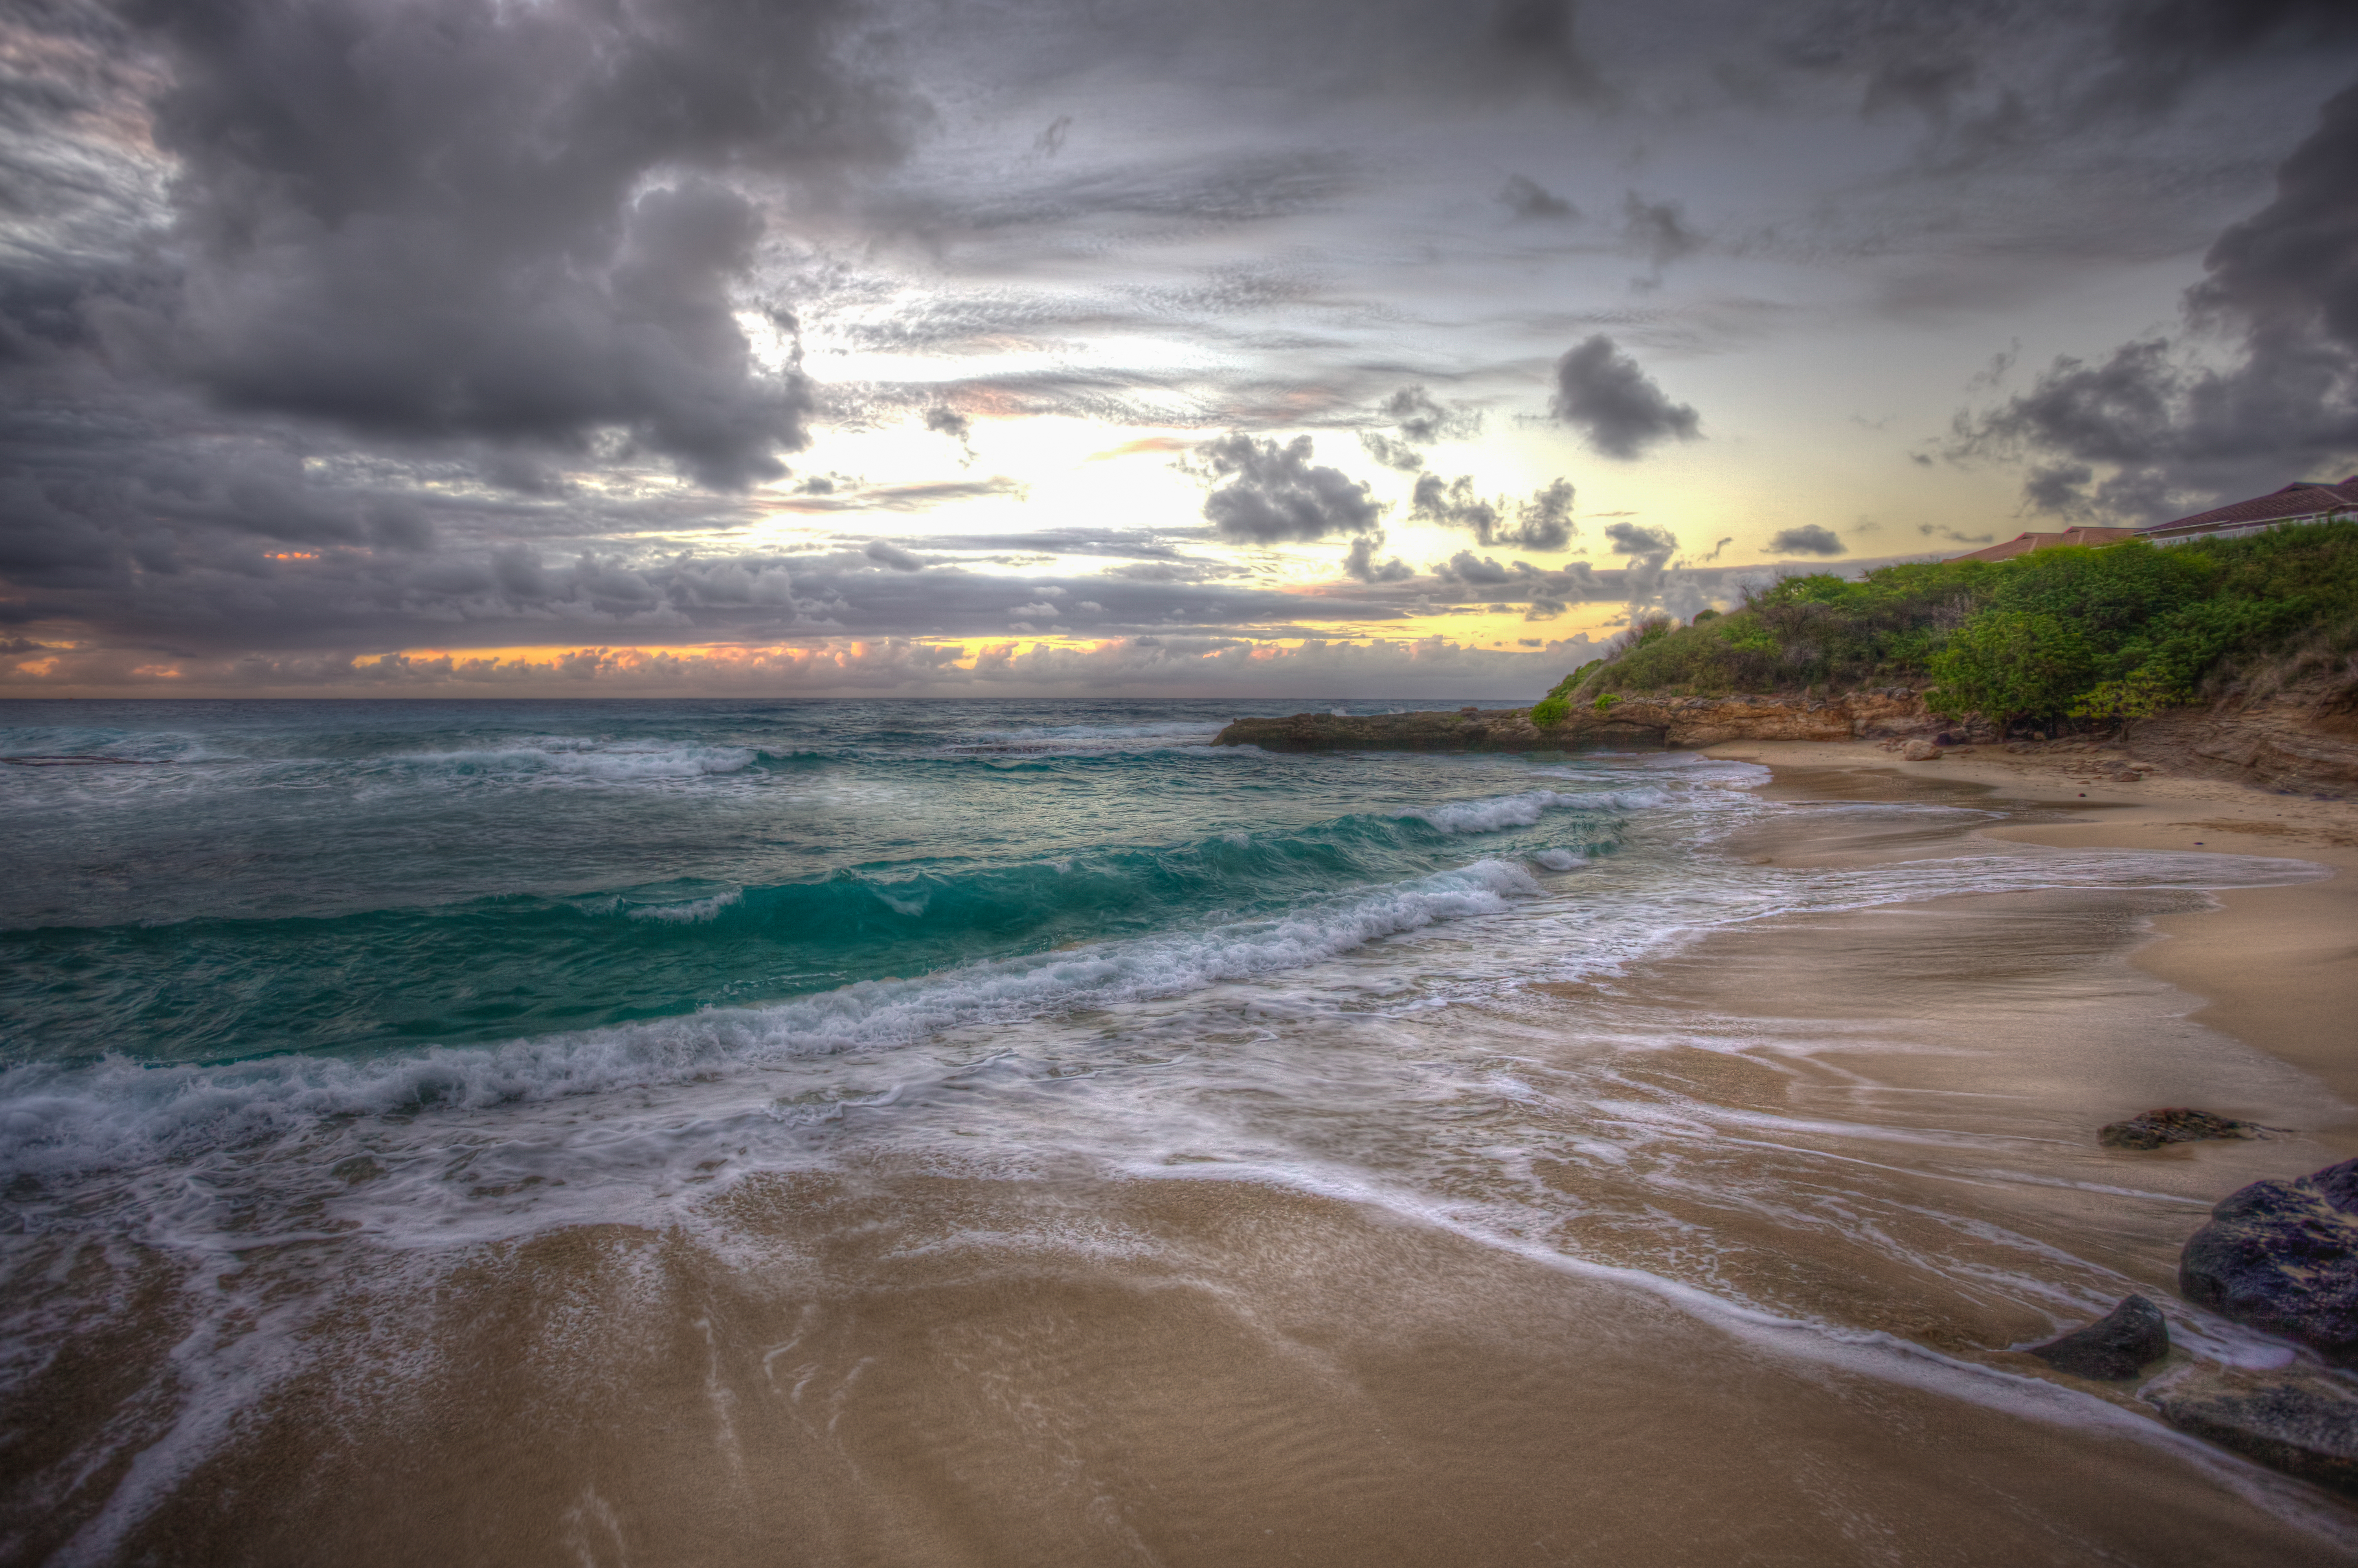 Скачать обои бесплатно Море, Облака, Пляж, Горизонт, Океан, Гавайи, Земля/природа картинка на рабочий стол ПК